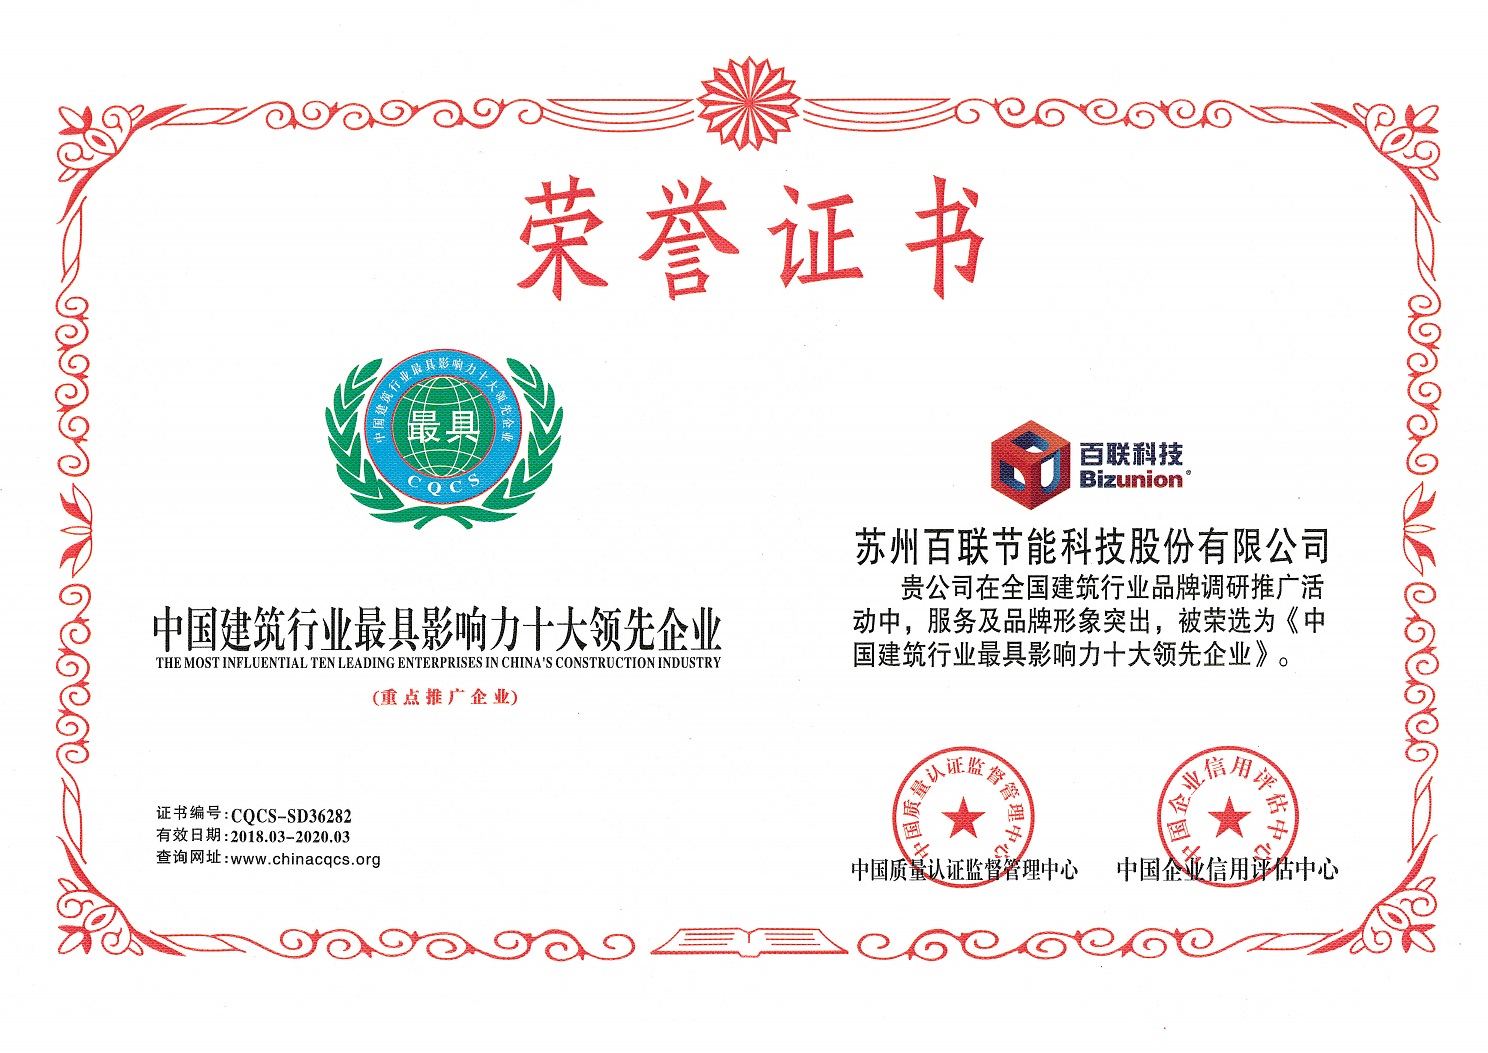 热烈祝贺苏州w88win中文手机版科技获评“中国建筑行业最具影响力十大领先企业”